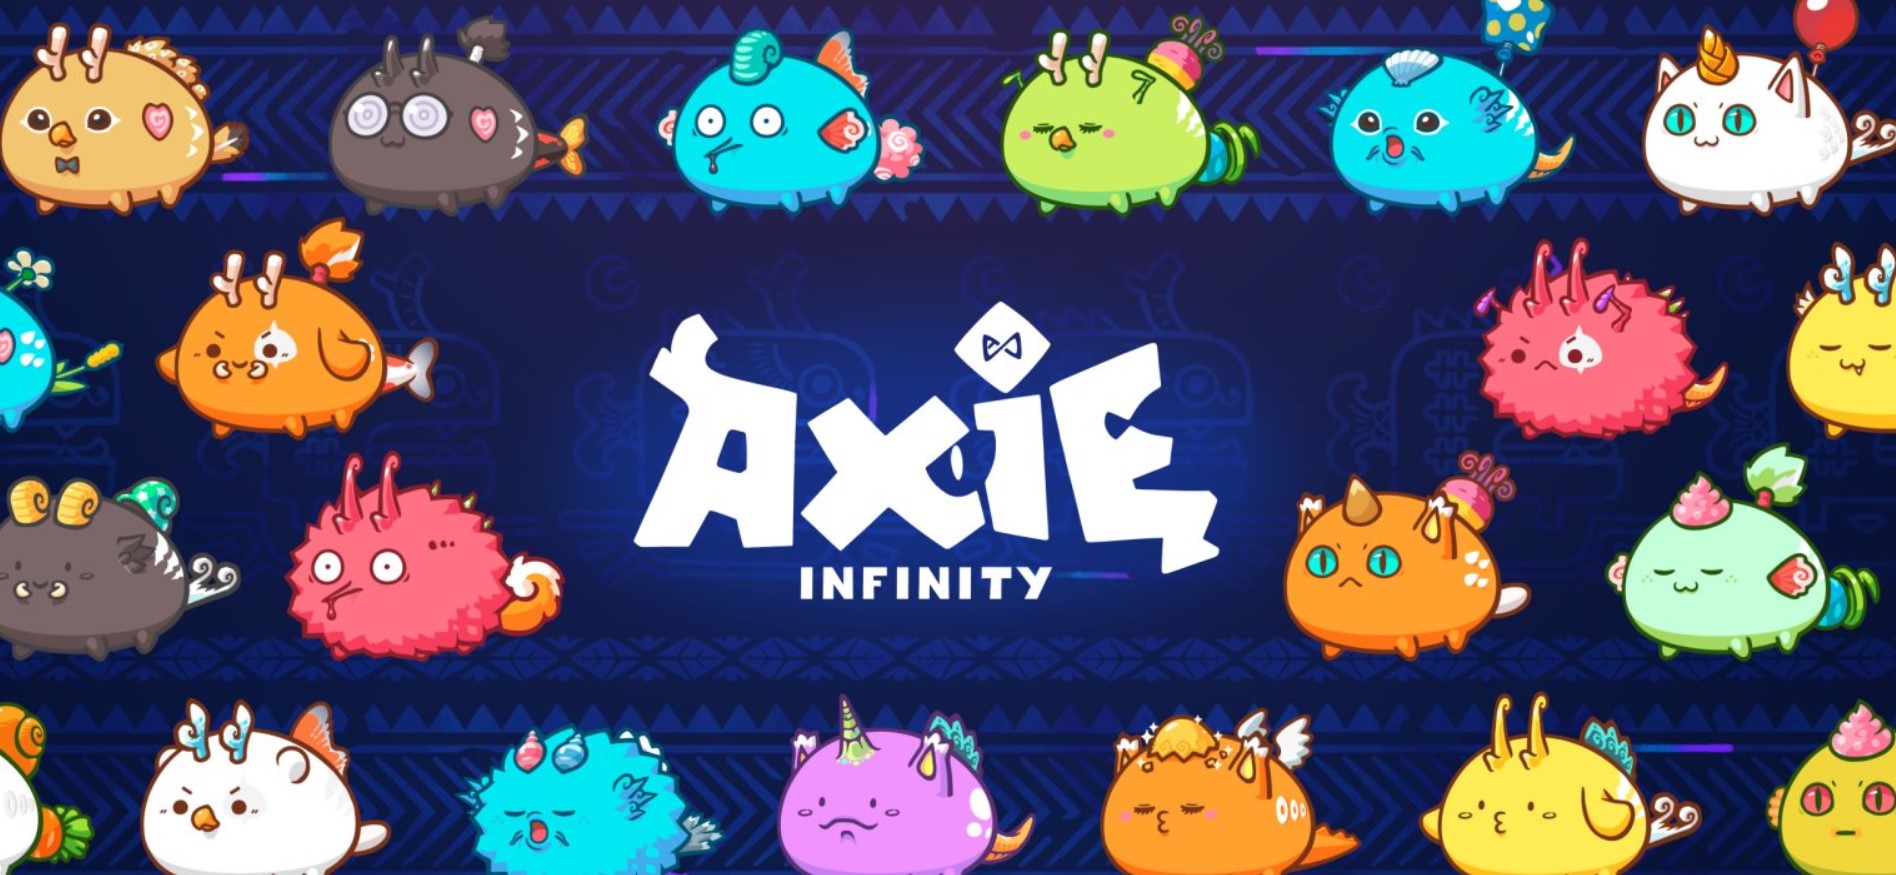 Axie Infinity - az idei év legnépszerűbb blokklánc játéka